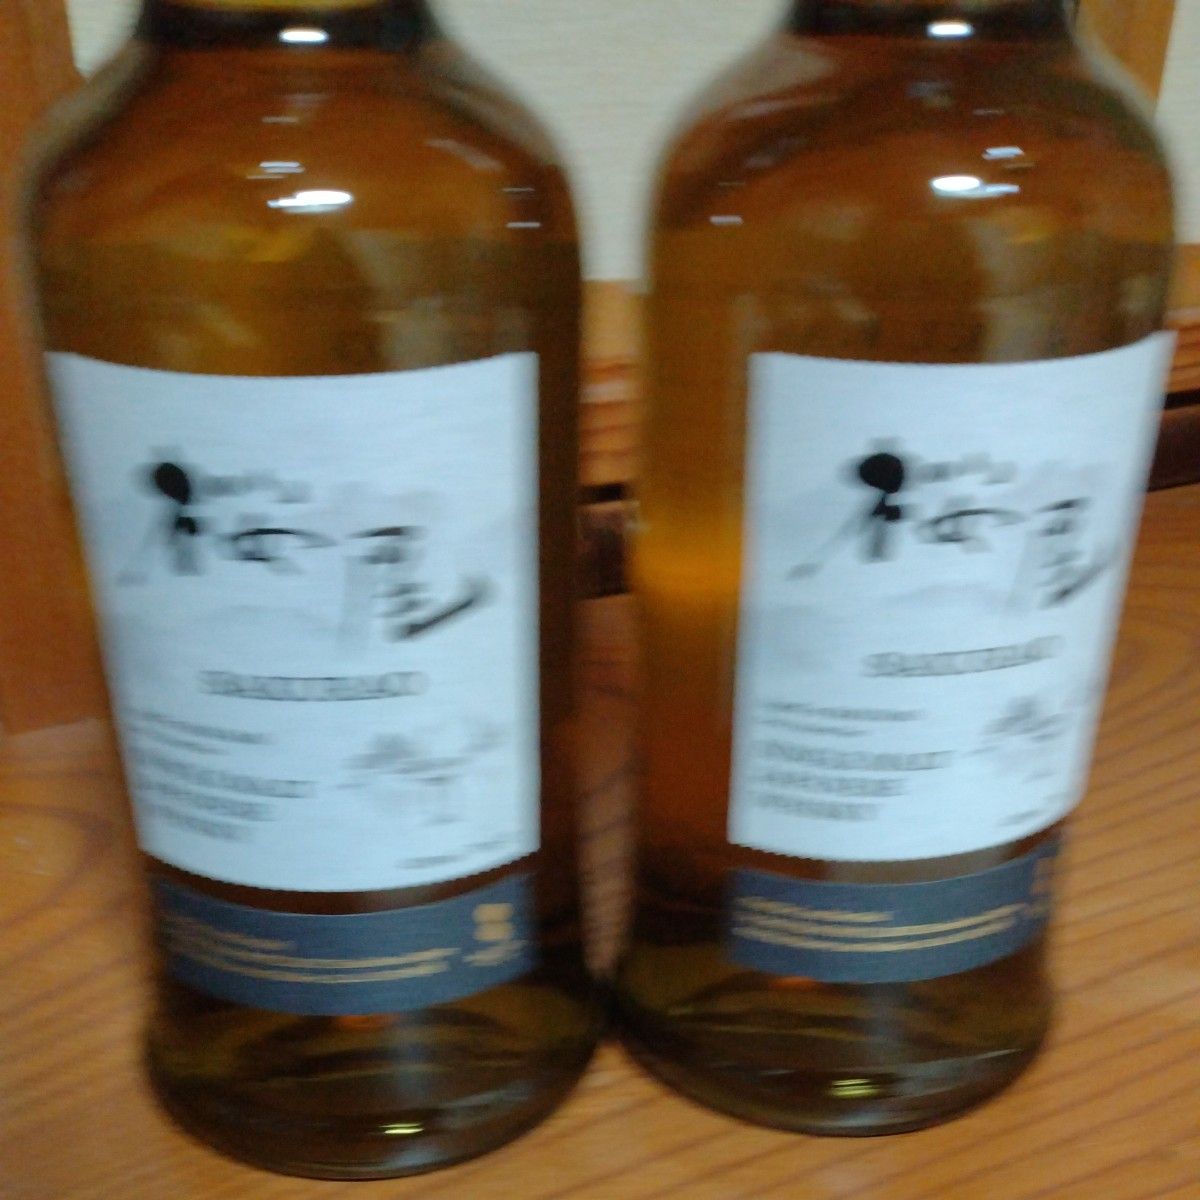 桜尾 シングルモルト SAKURAO ウイスキー シングルモルトウイスキー ジャパニーズウイスキー　2本